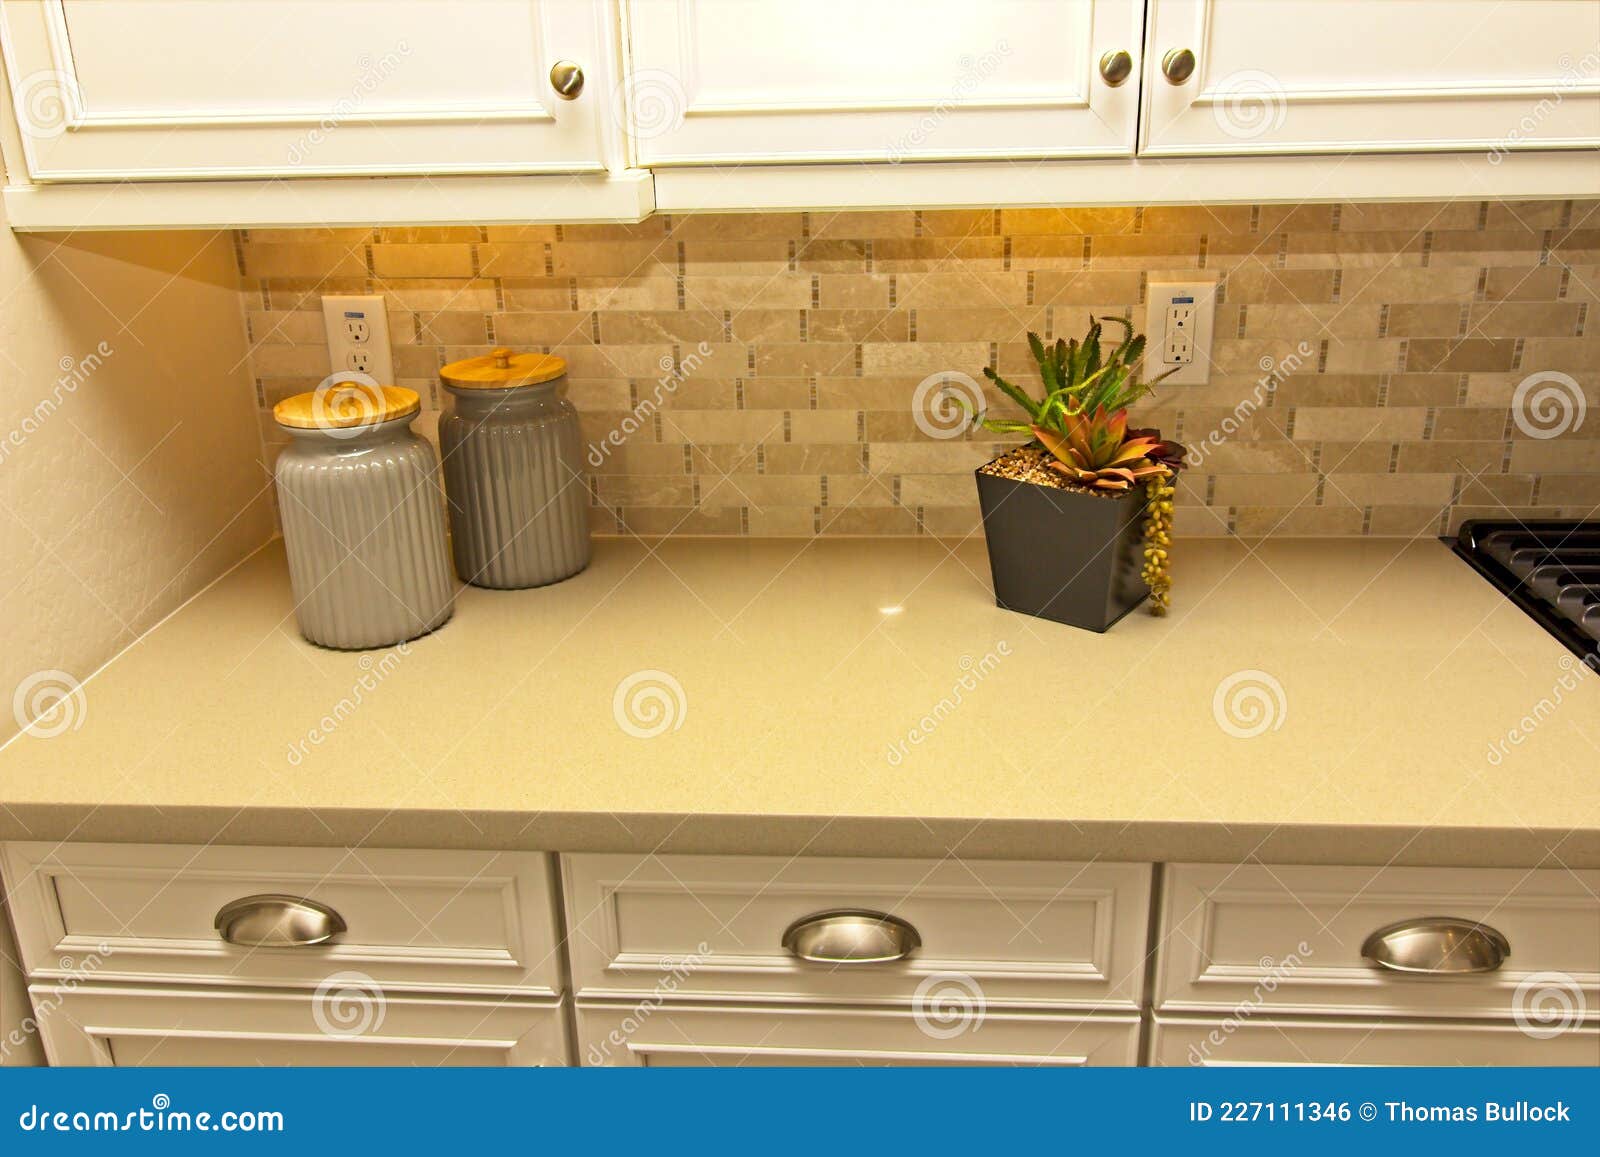 Zierkanister Und Pflanze Auf Küchentheke Stockfoto - Bild von